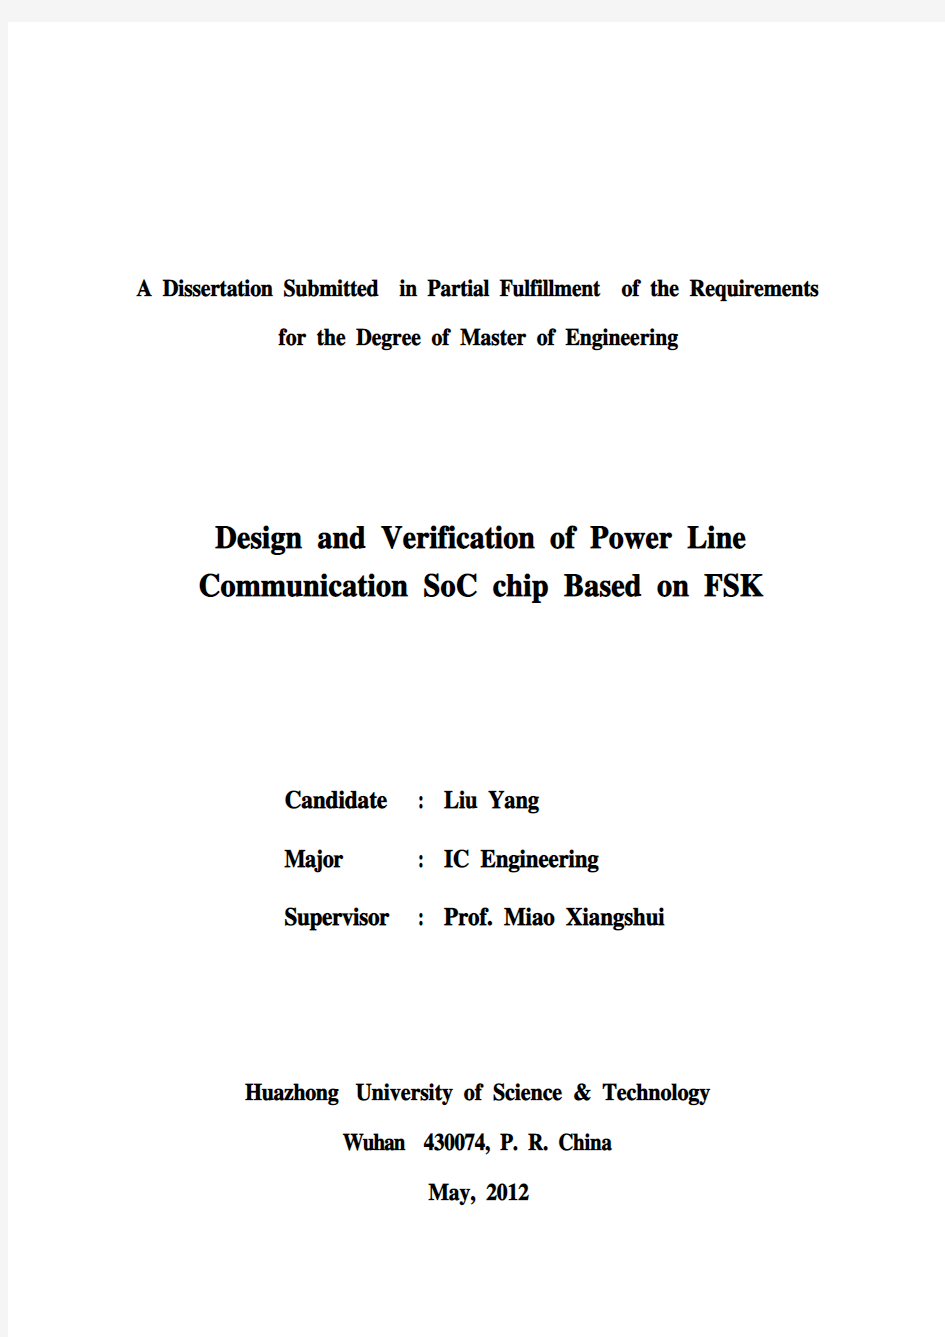 基于FSK的电力载波通信SoC芯片设计与验证--链路层借鉴